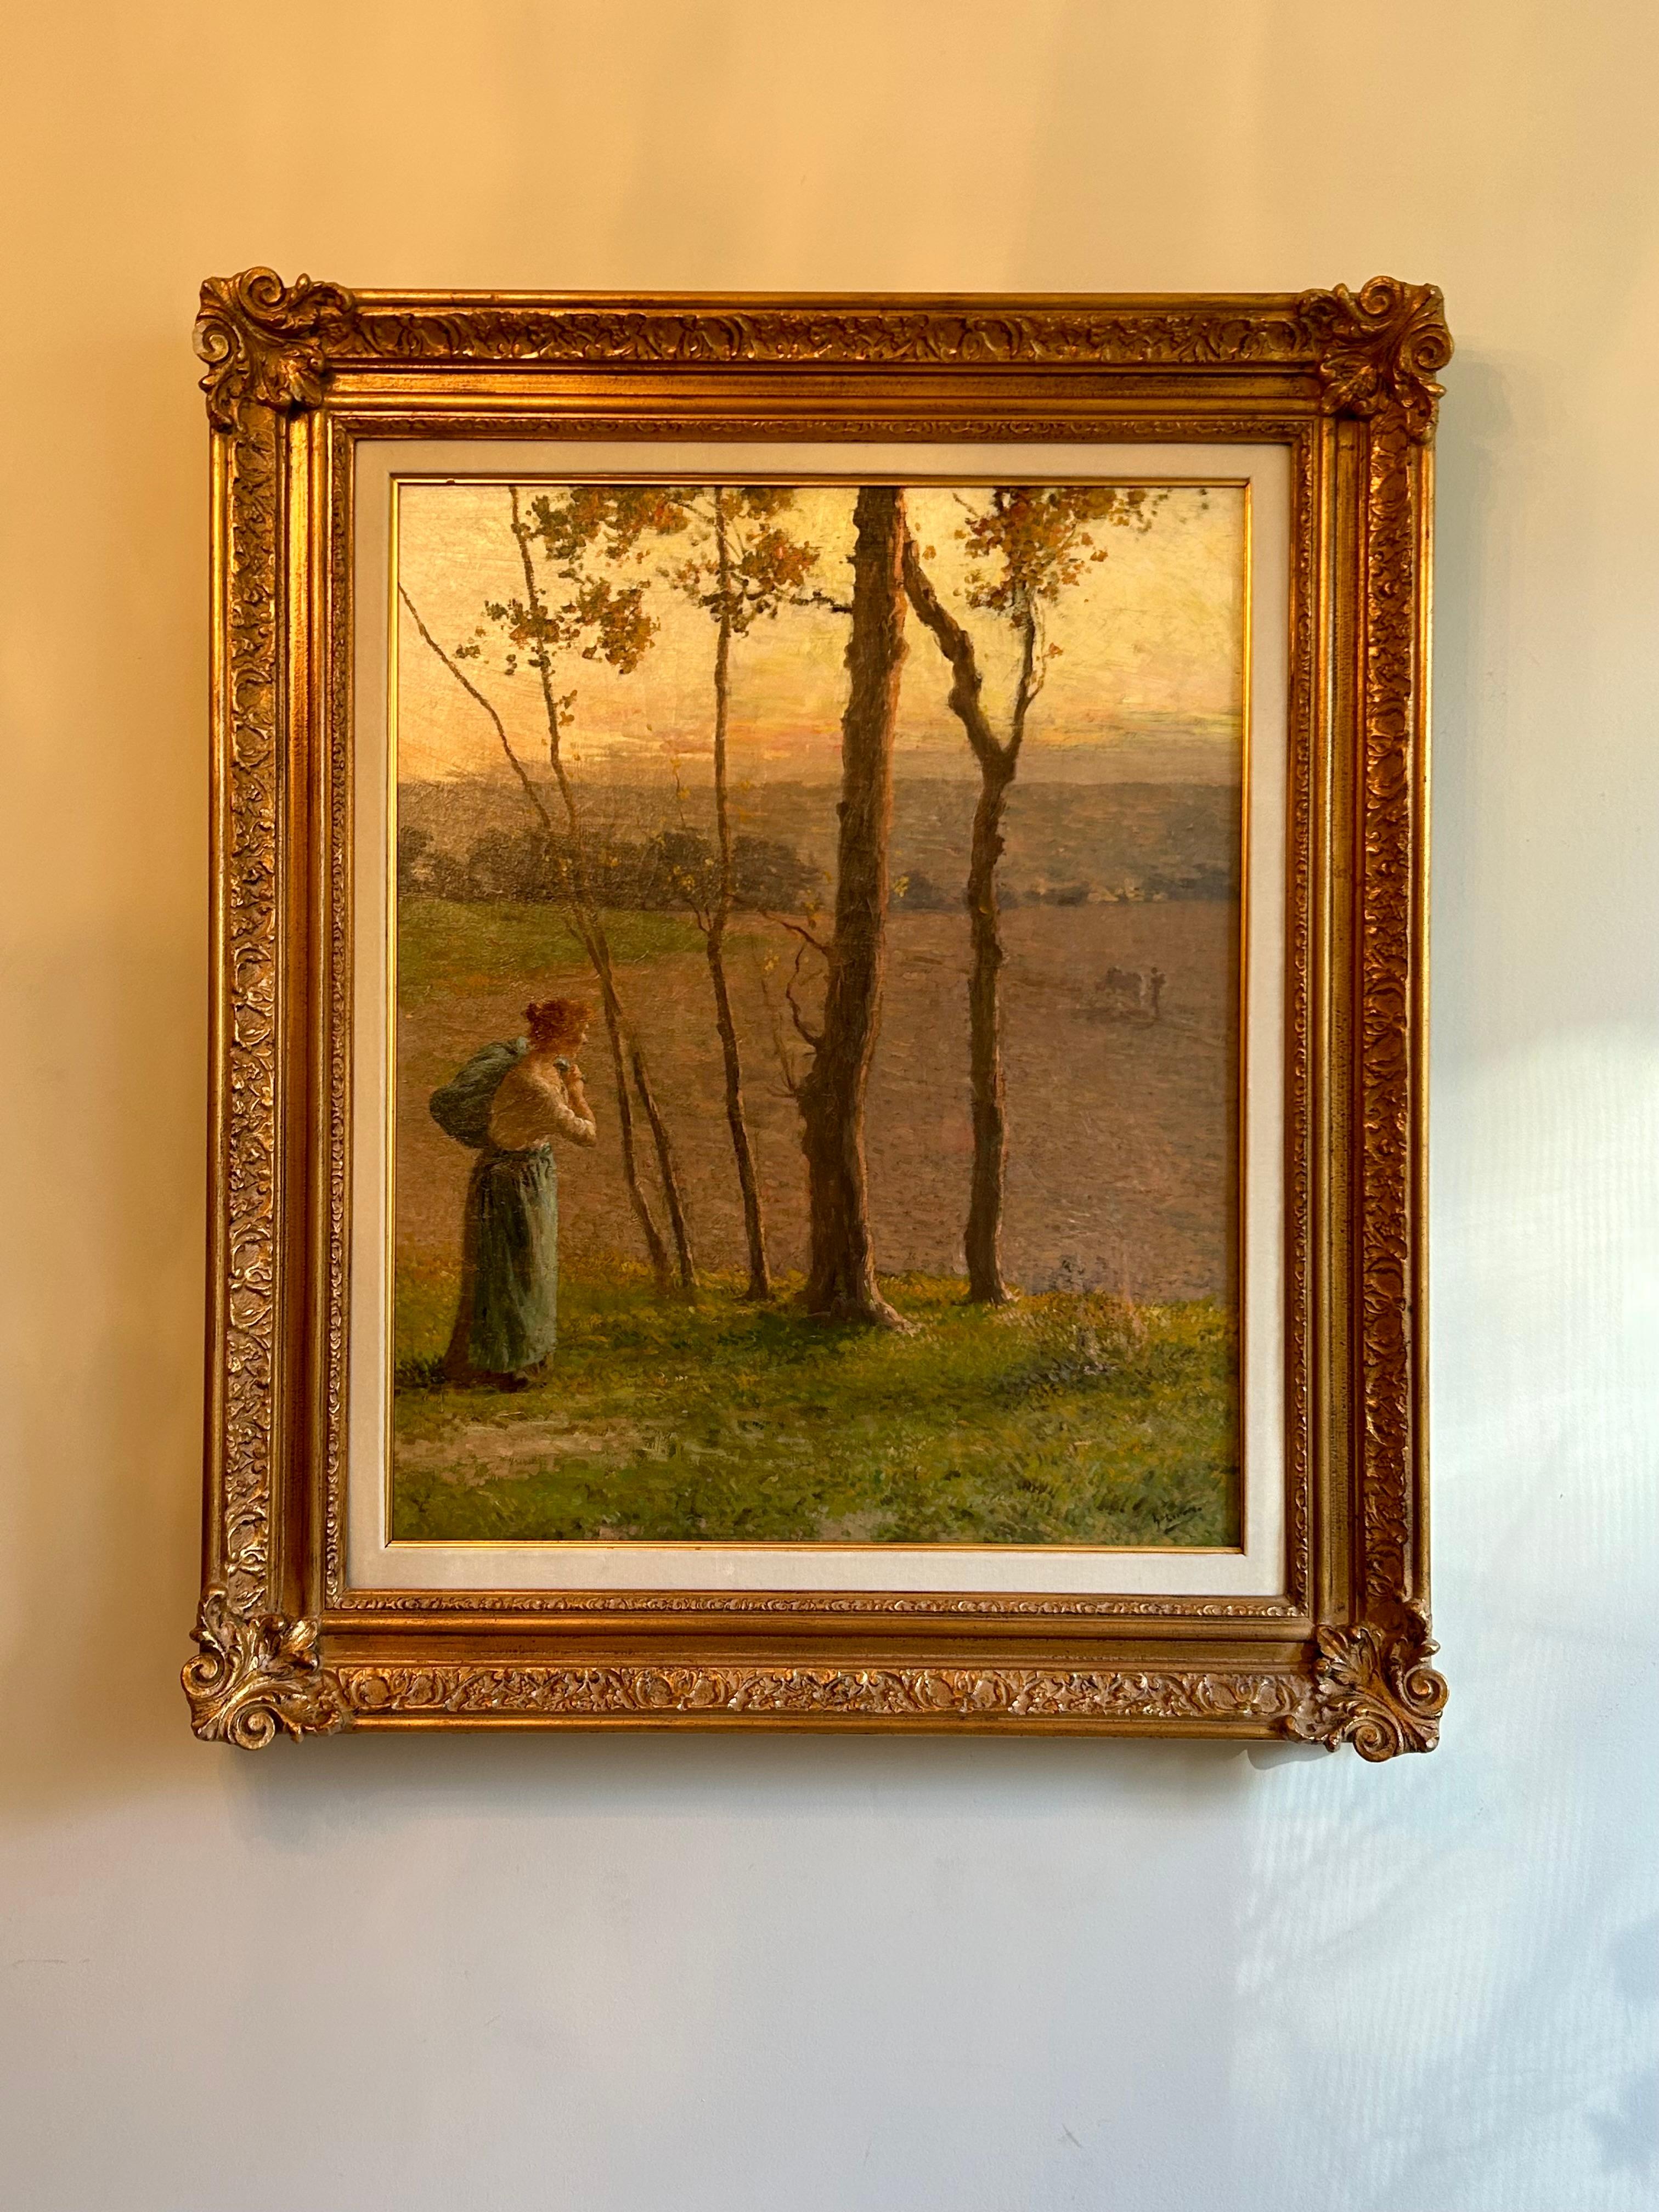 Ein schönes Gemälde des amerikanischen Malers André Gisson in einem großen vergoldeten Rahmen. Gisson war für seine impressionistischen Gemälde bekannt und wird häufig gesammelt. Dieses Werk verbindet seine Leidenschaft für die Landschaft mit der